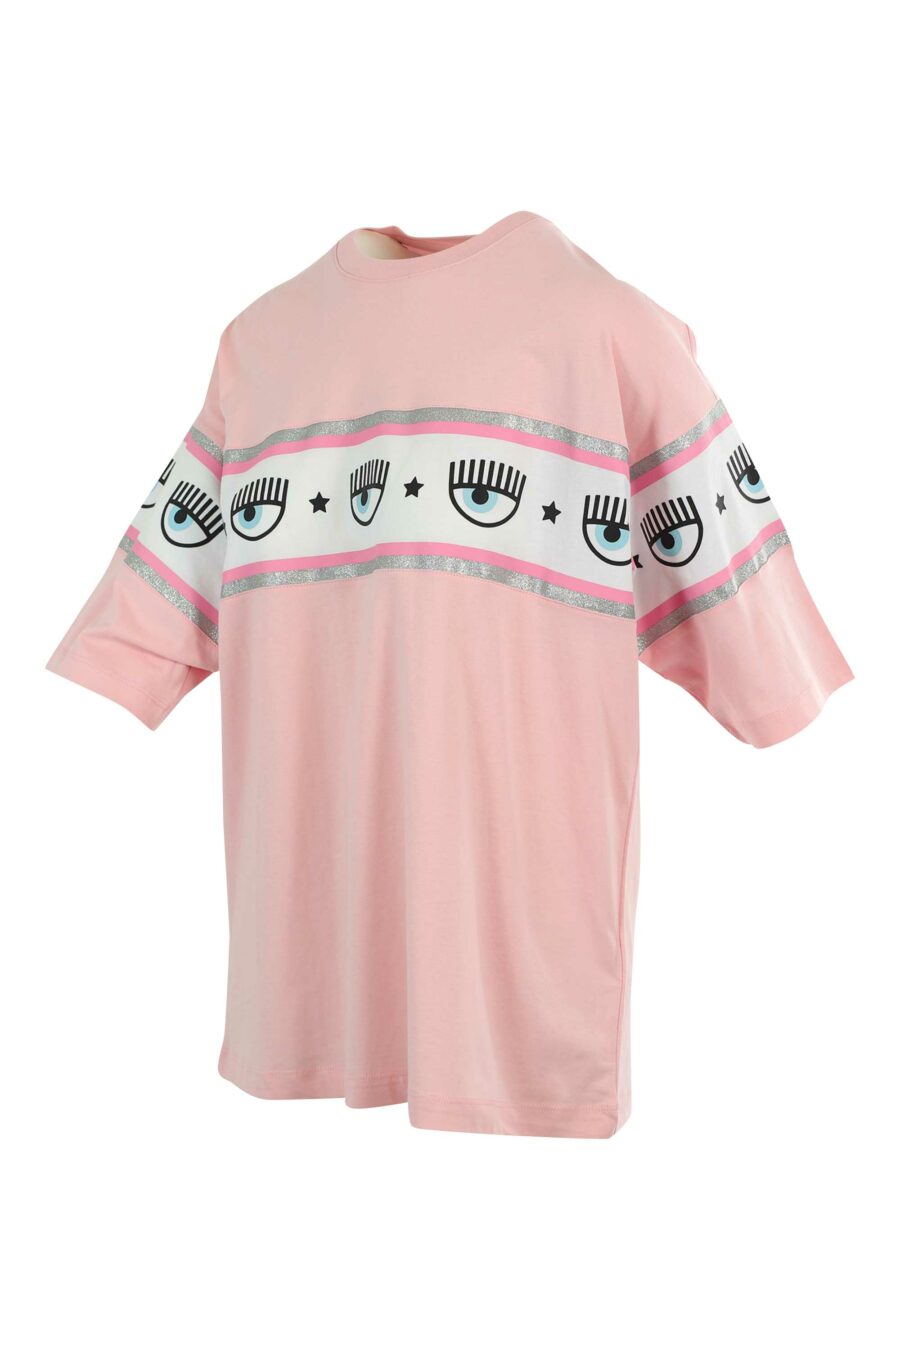 Camiseta rosa manga ancha con logo ojo en cinta - 8052672419422 2